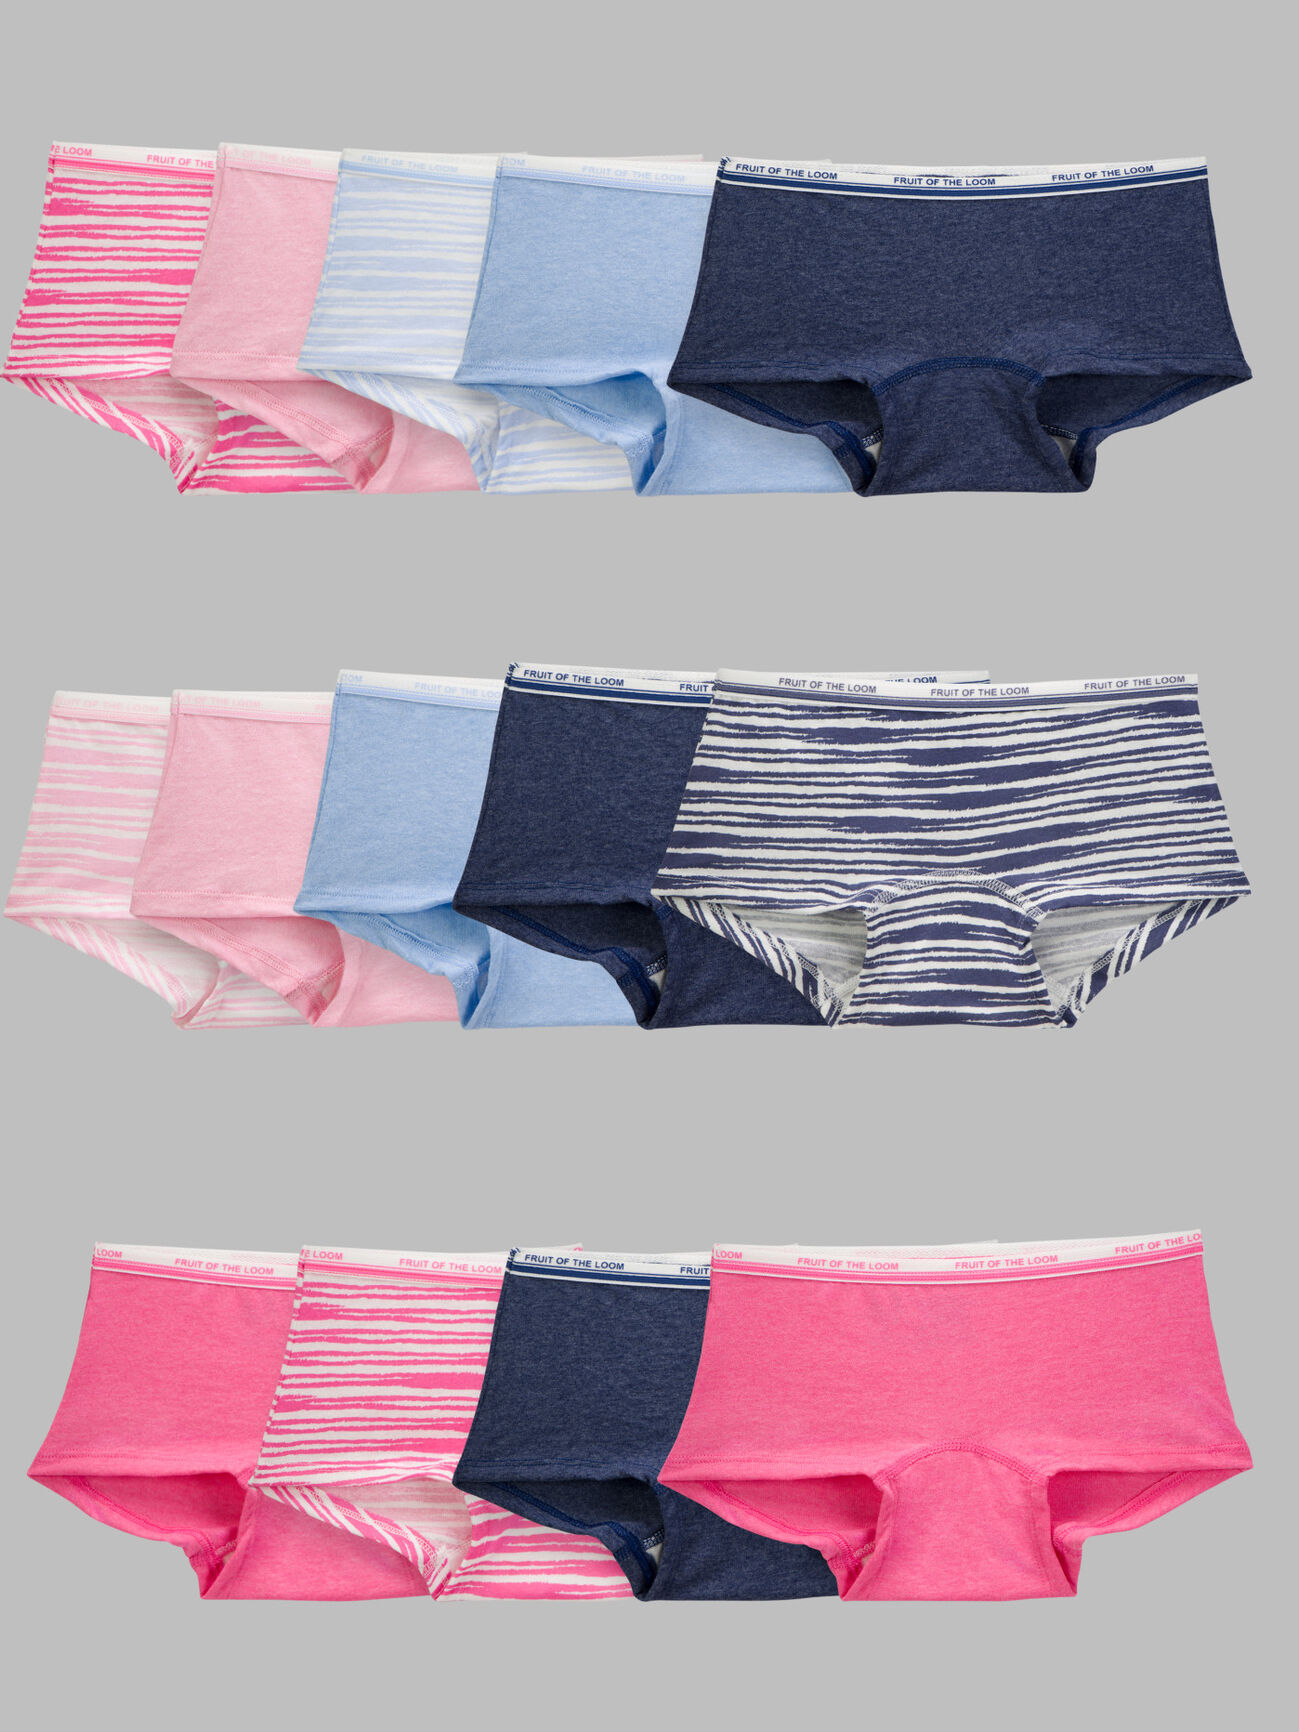 Girls' Heather Boy Short Underwear, Assorted 14 Pack Assorted